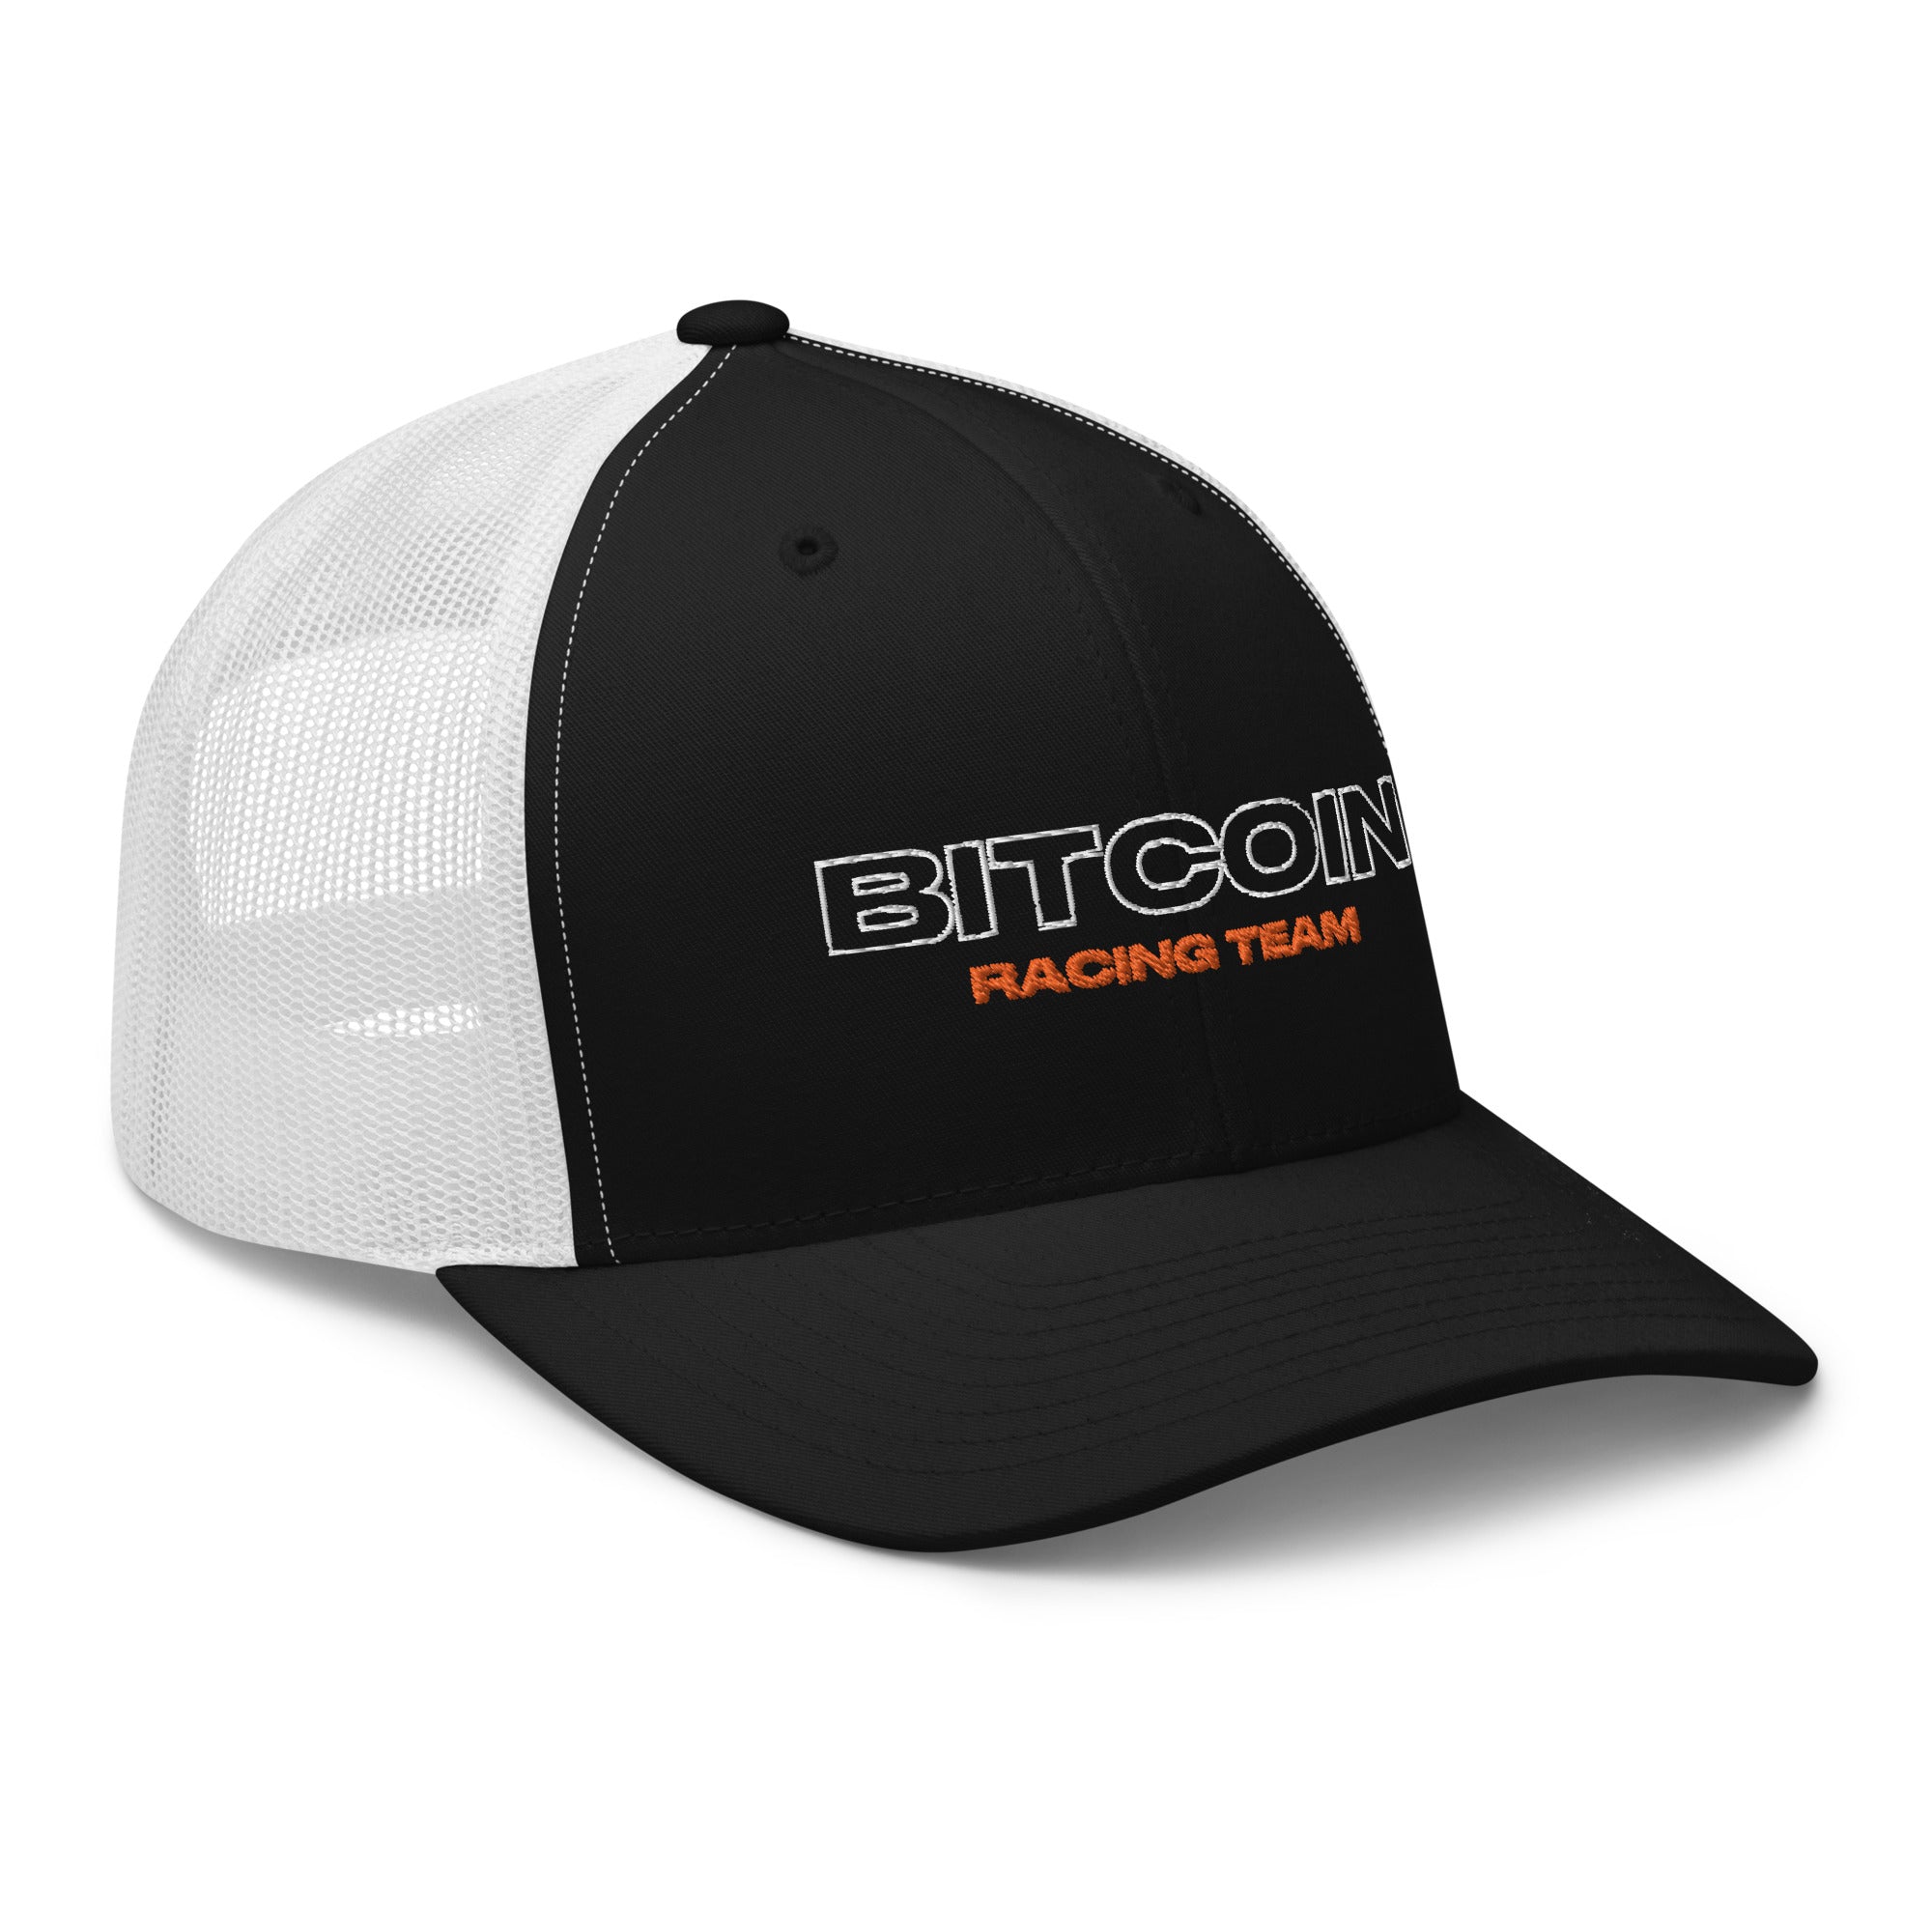 Bitcoin Racing Team Crypto Trucker Cap